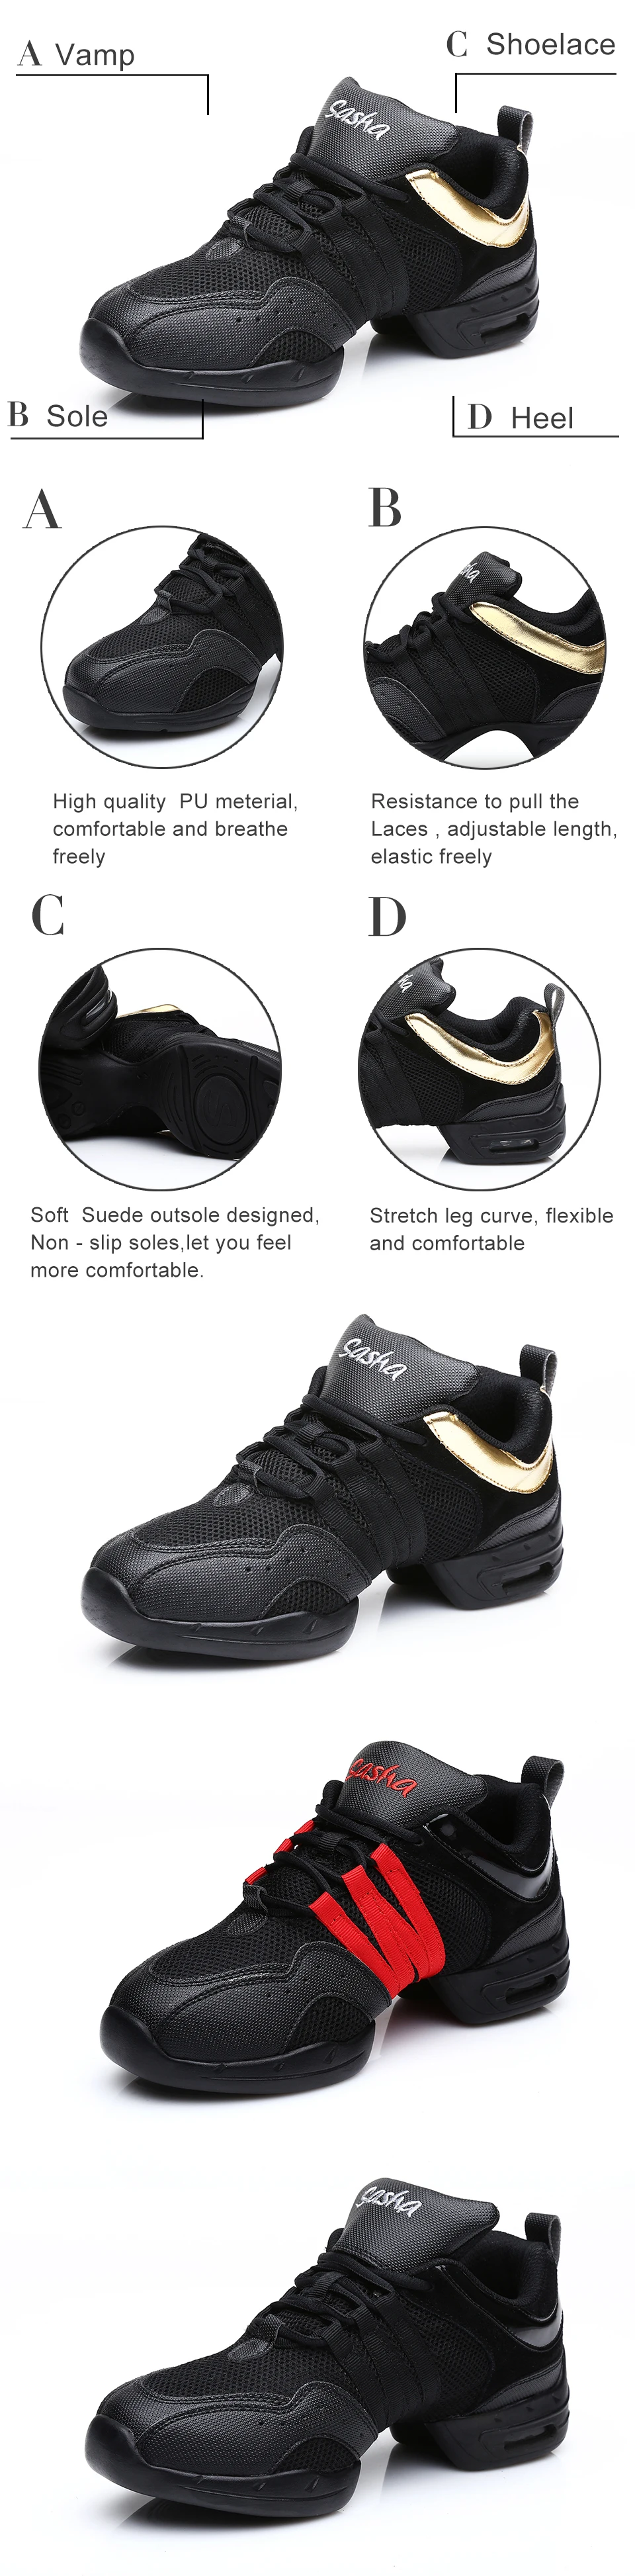 Танцевальная обувь на мягкой подошве для фитнеса; дышащие Танцевальные Кроссовки из сетчатого материала; Танцевальная обувь на квадратном каблуке; Цвет черный, белый; обувь в стиле джаз и хип-хоп